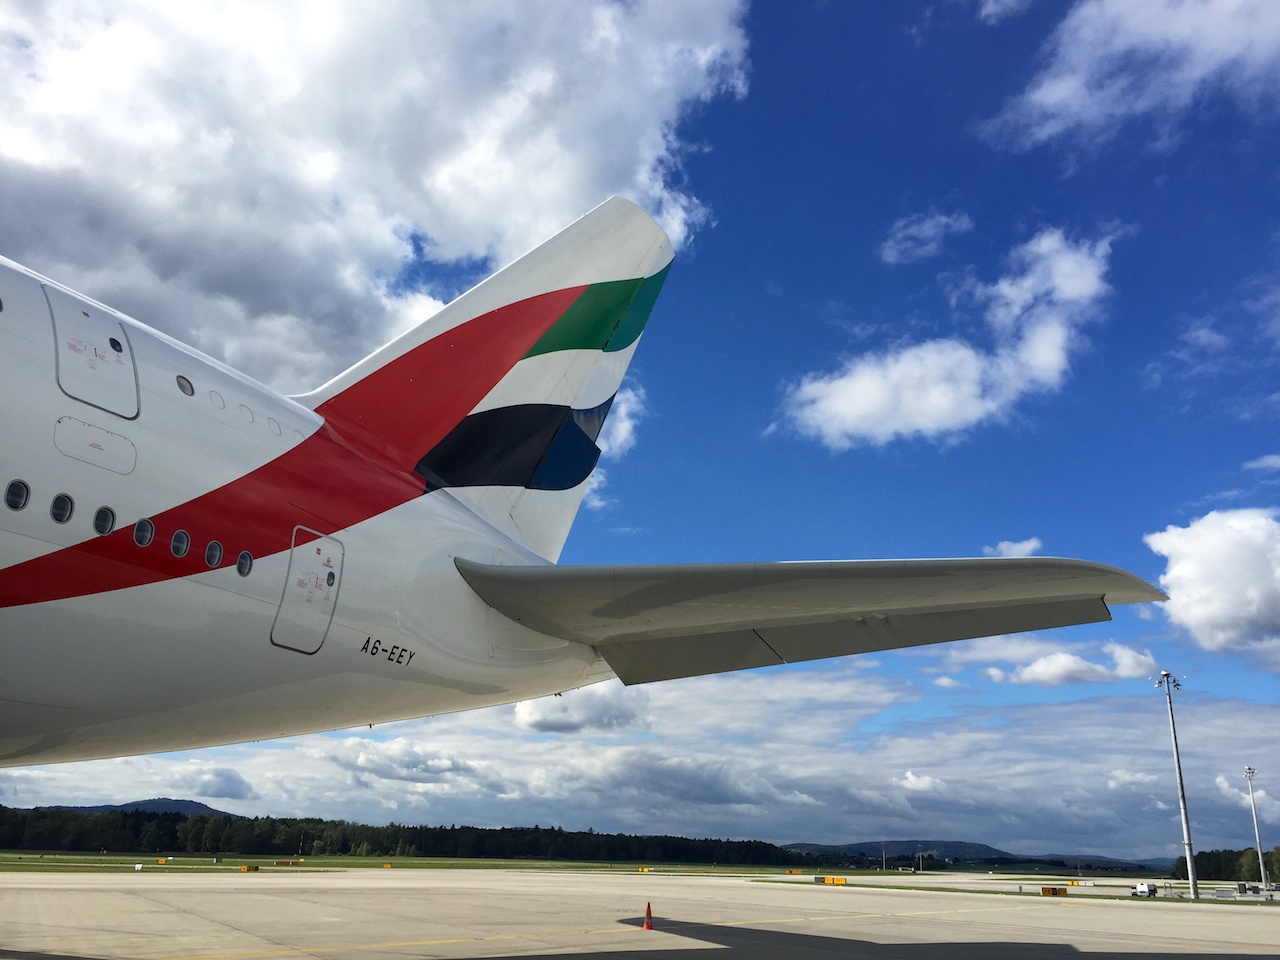 DIe Heckflosse des A380 reckt sich 24 Meter in die Höhe.